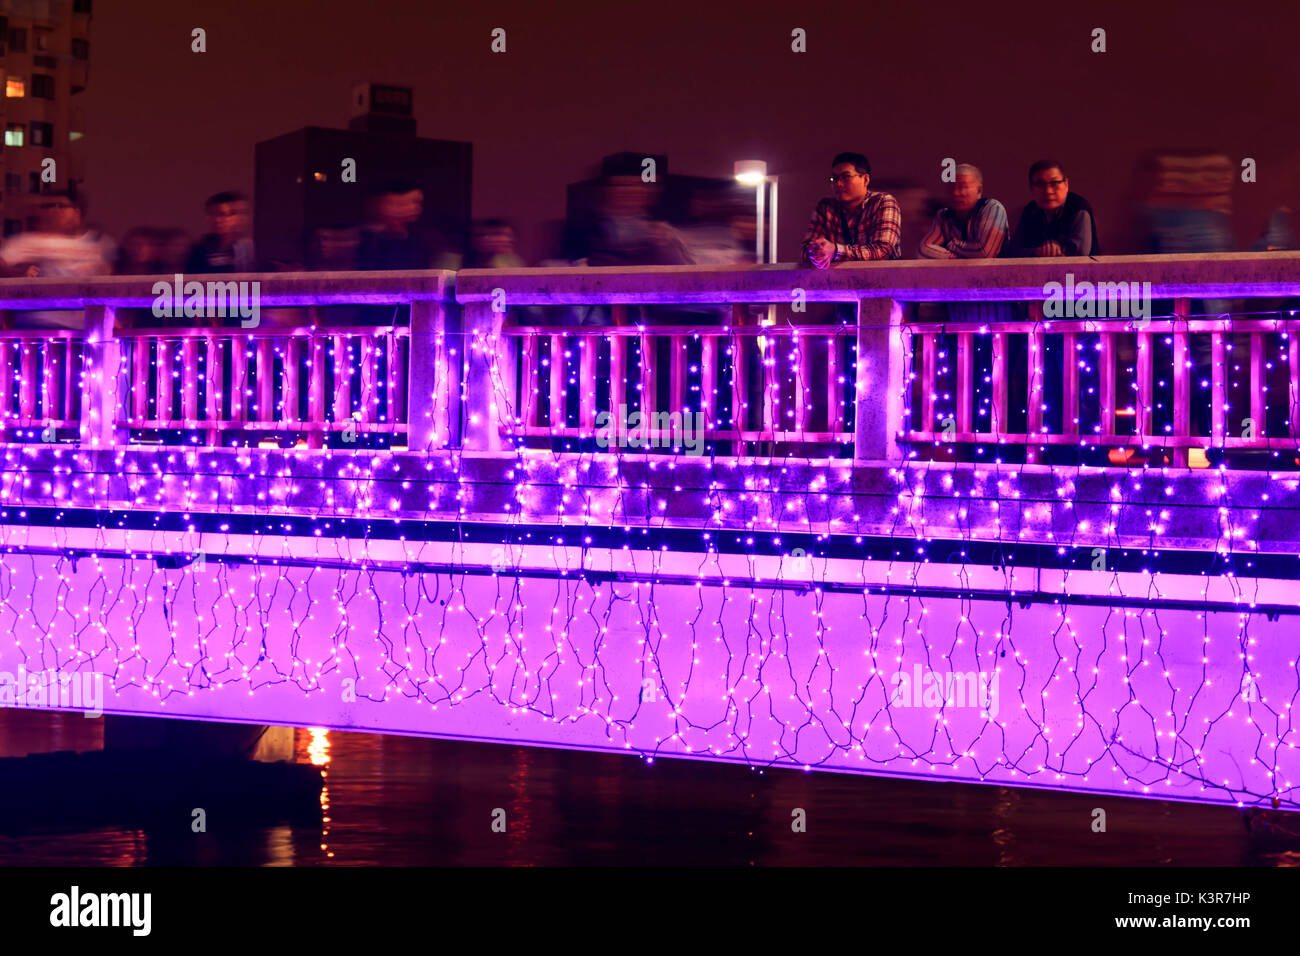 Kaohsiung, Taiwan. Menschen zu Fuß auf die Brücke von der Liebe Fluss von Kaohsiung während der Feiern zum chinesischen Neujahrsfest. Das chinesische Neujahr ist eine wichtige Chinesische Festival feierte an der Wende der chinesischen Kalender. In China ist es auch wie das Frühlingsfest, die wörtliche Übersetzung der modernen chinesischen Namen bekannt. Stockfoto